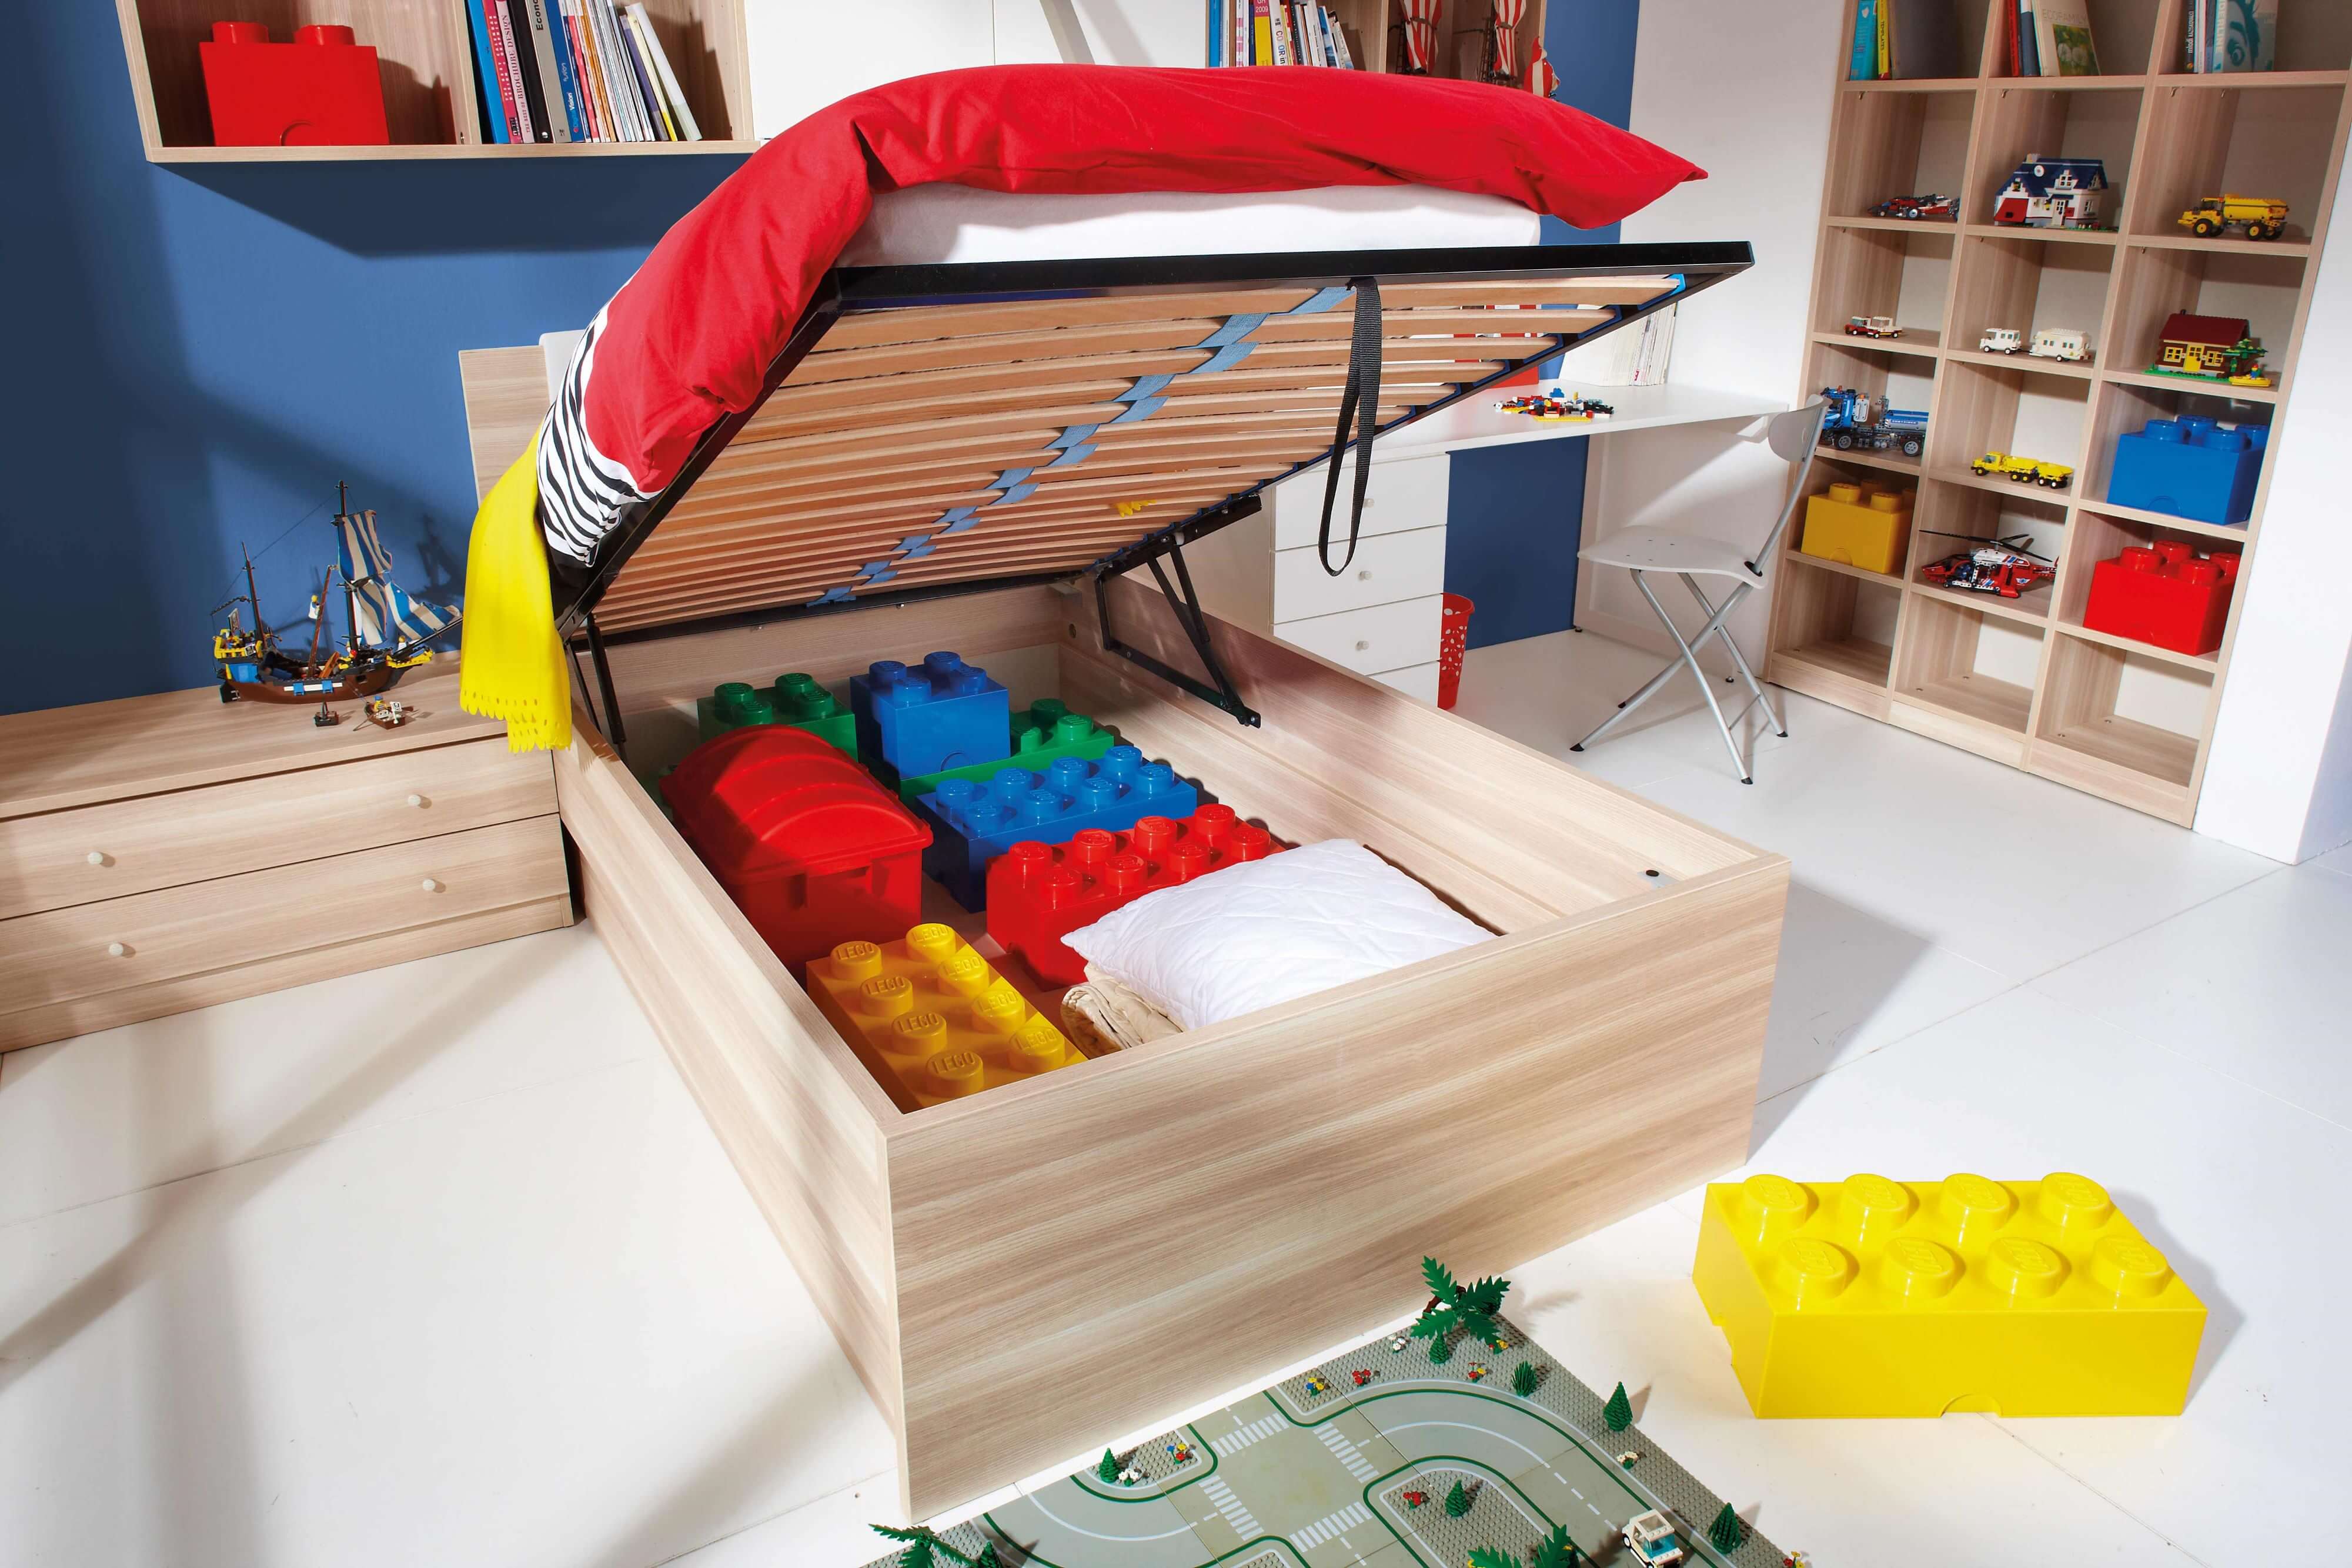 Prostor za igrače v predalu pod dvižno posteljo